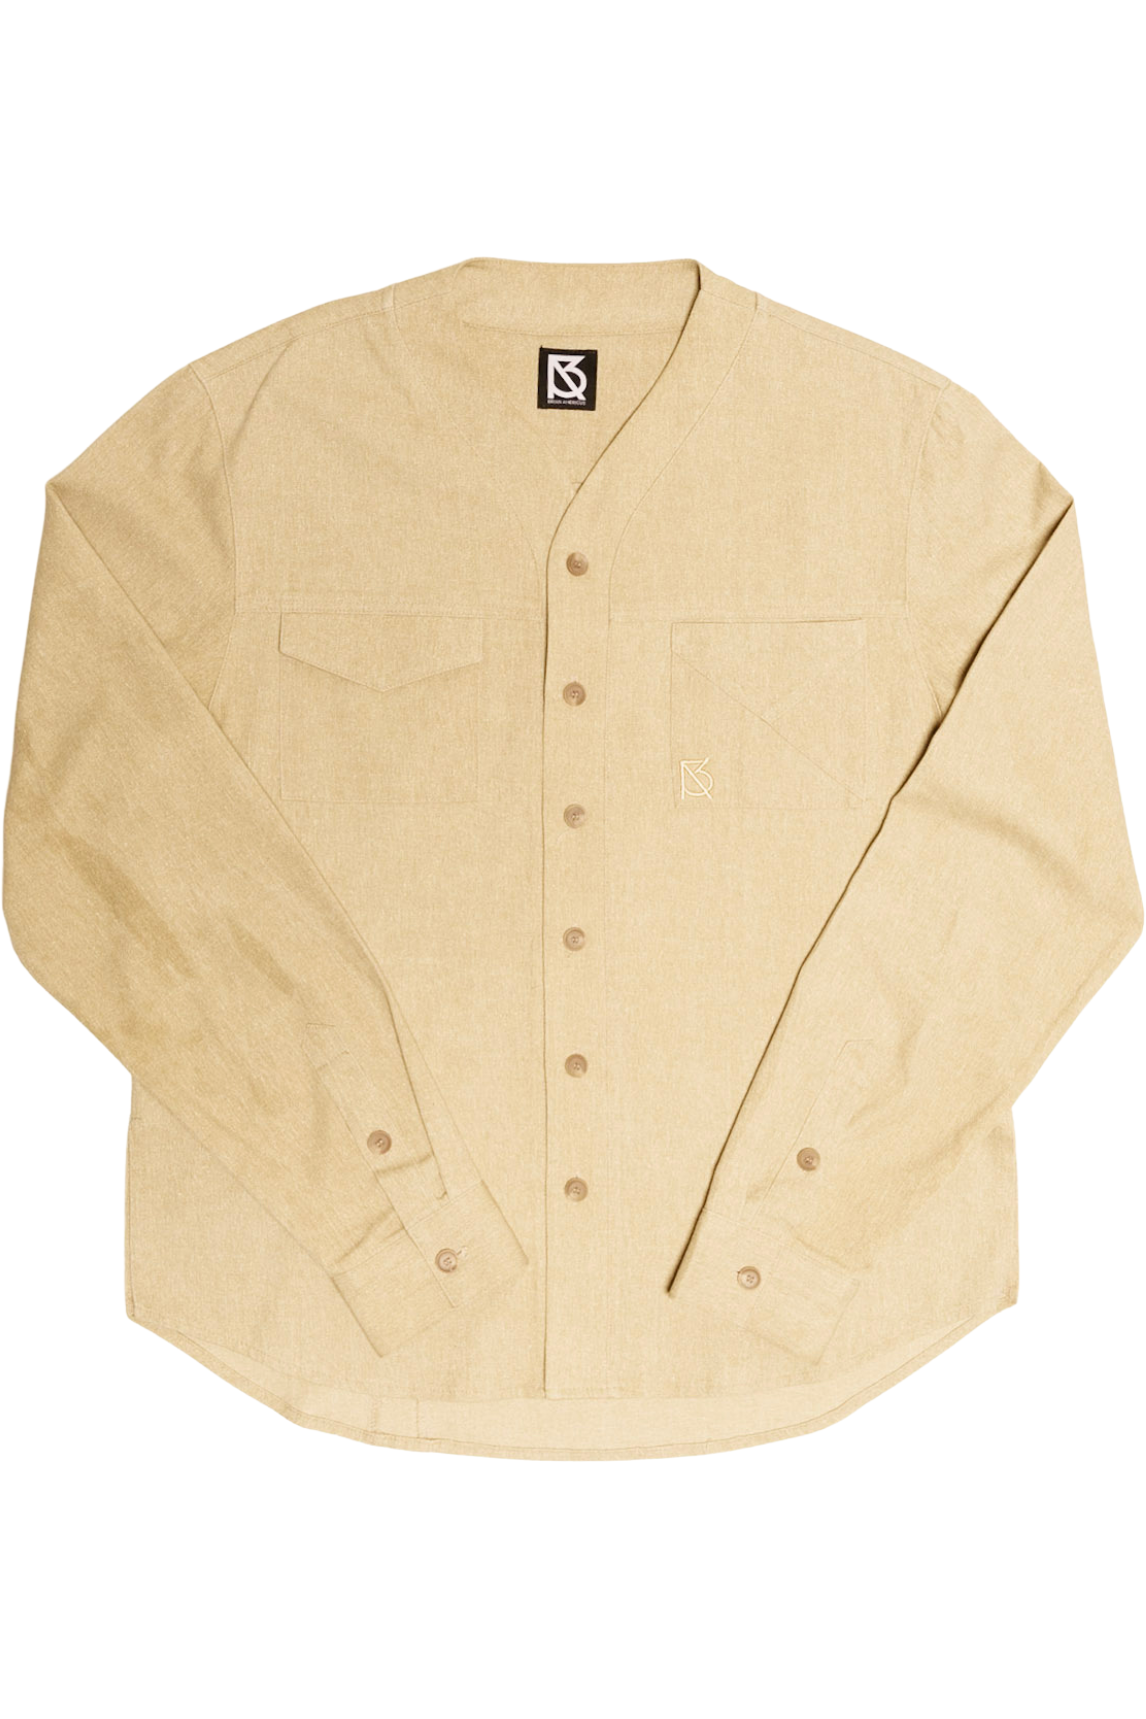 Herman V Neck Button Up Shirt: Beige